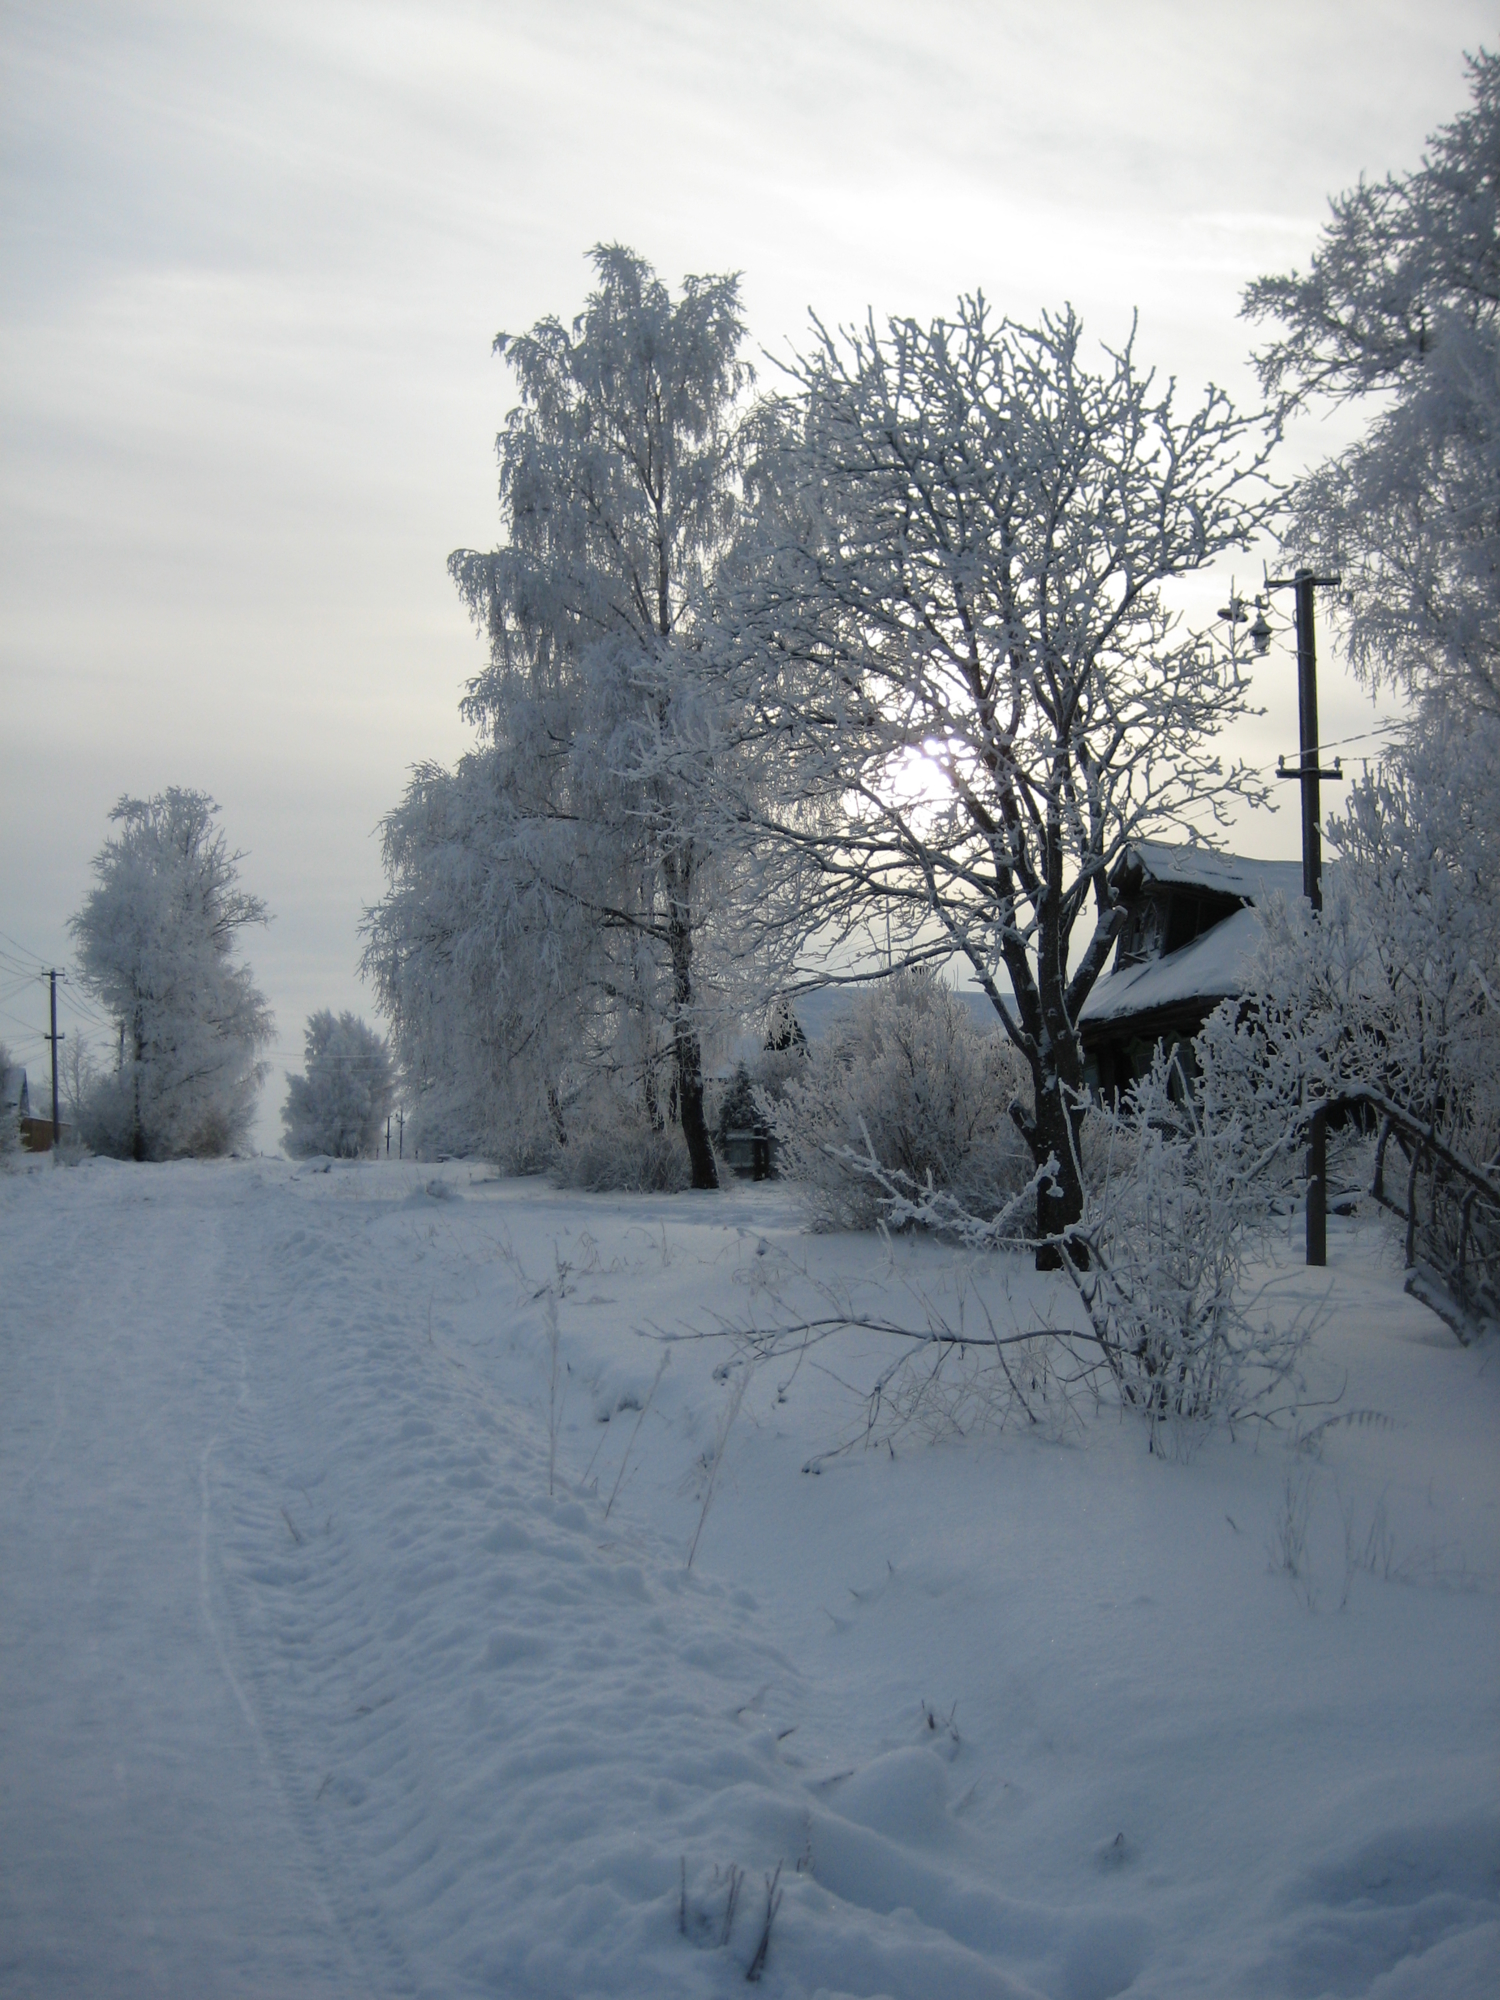 зима в деревеньке